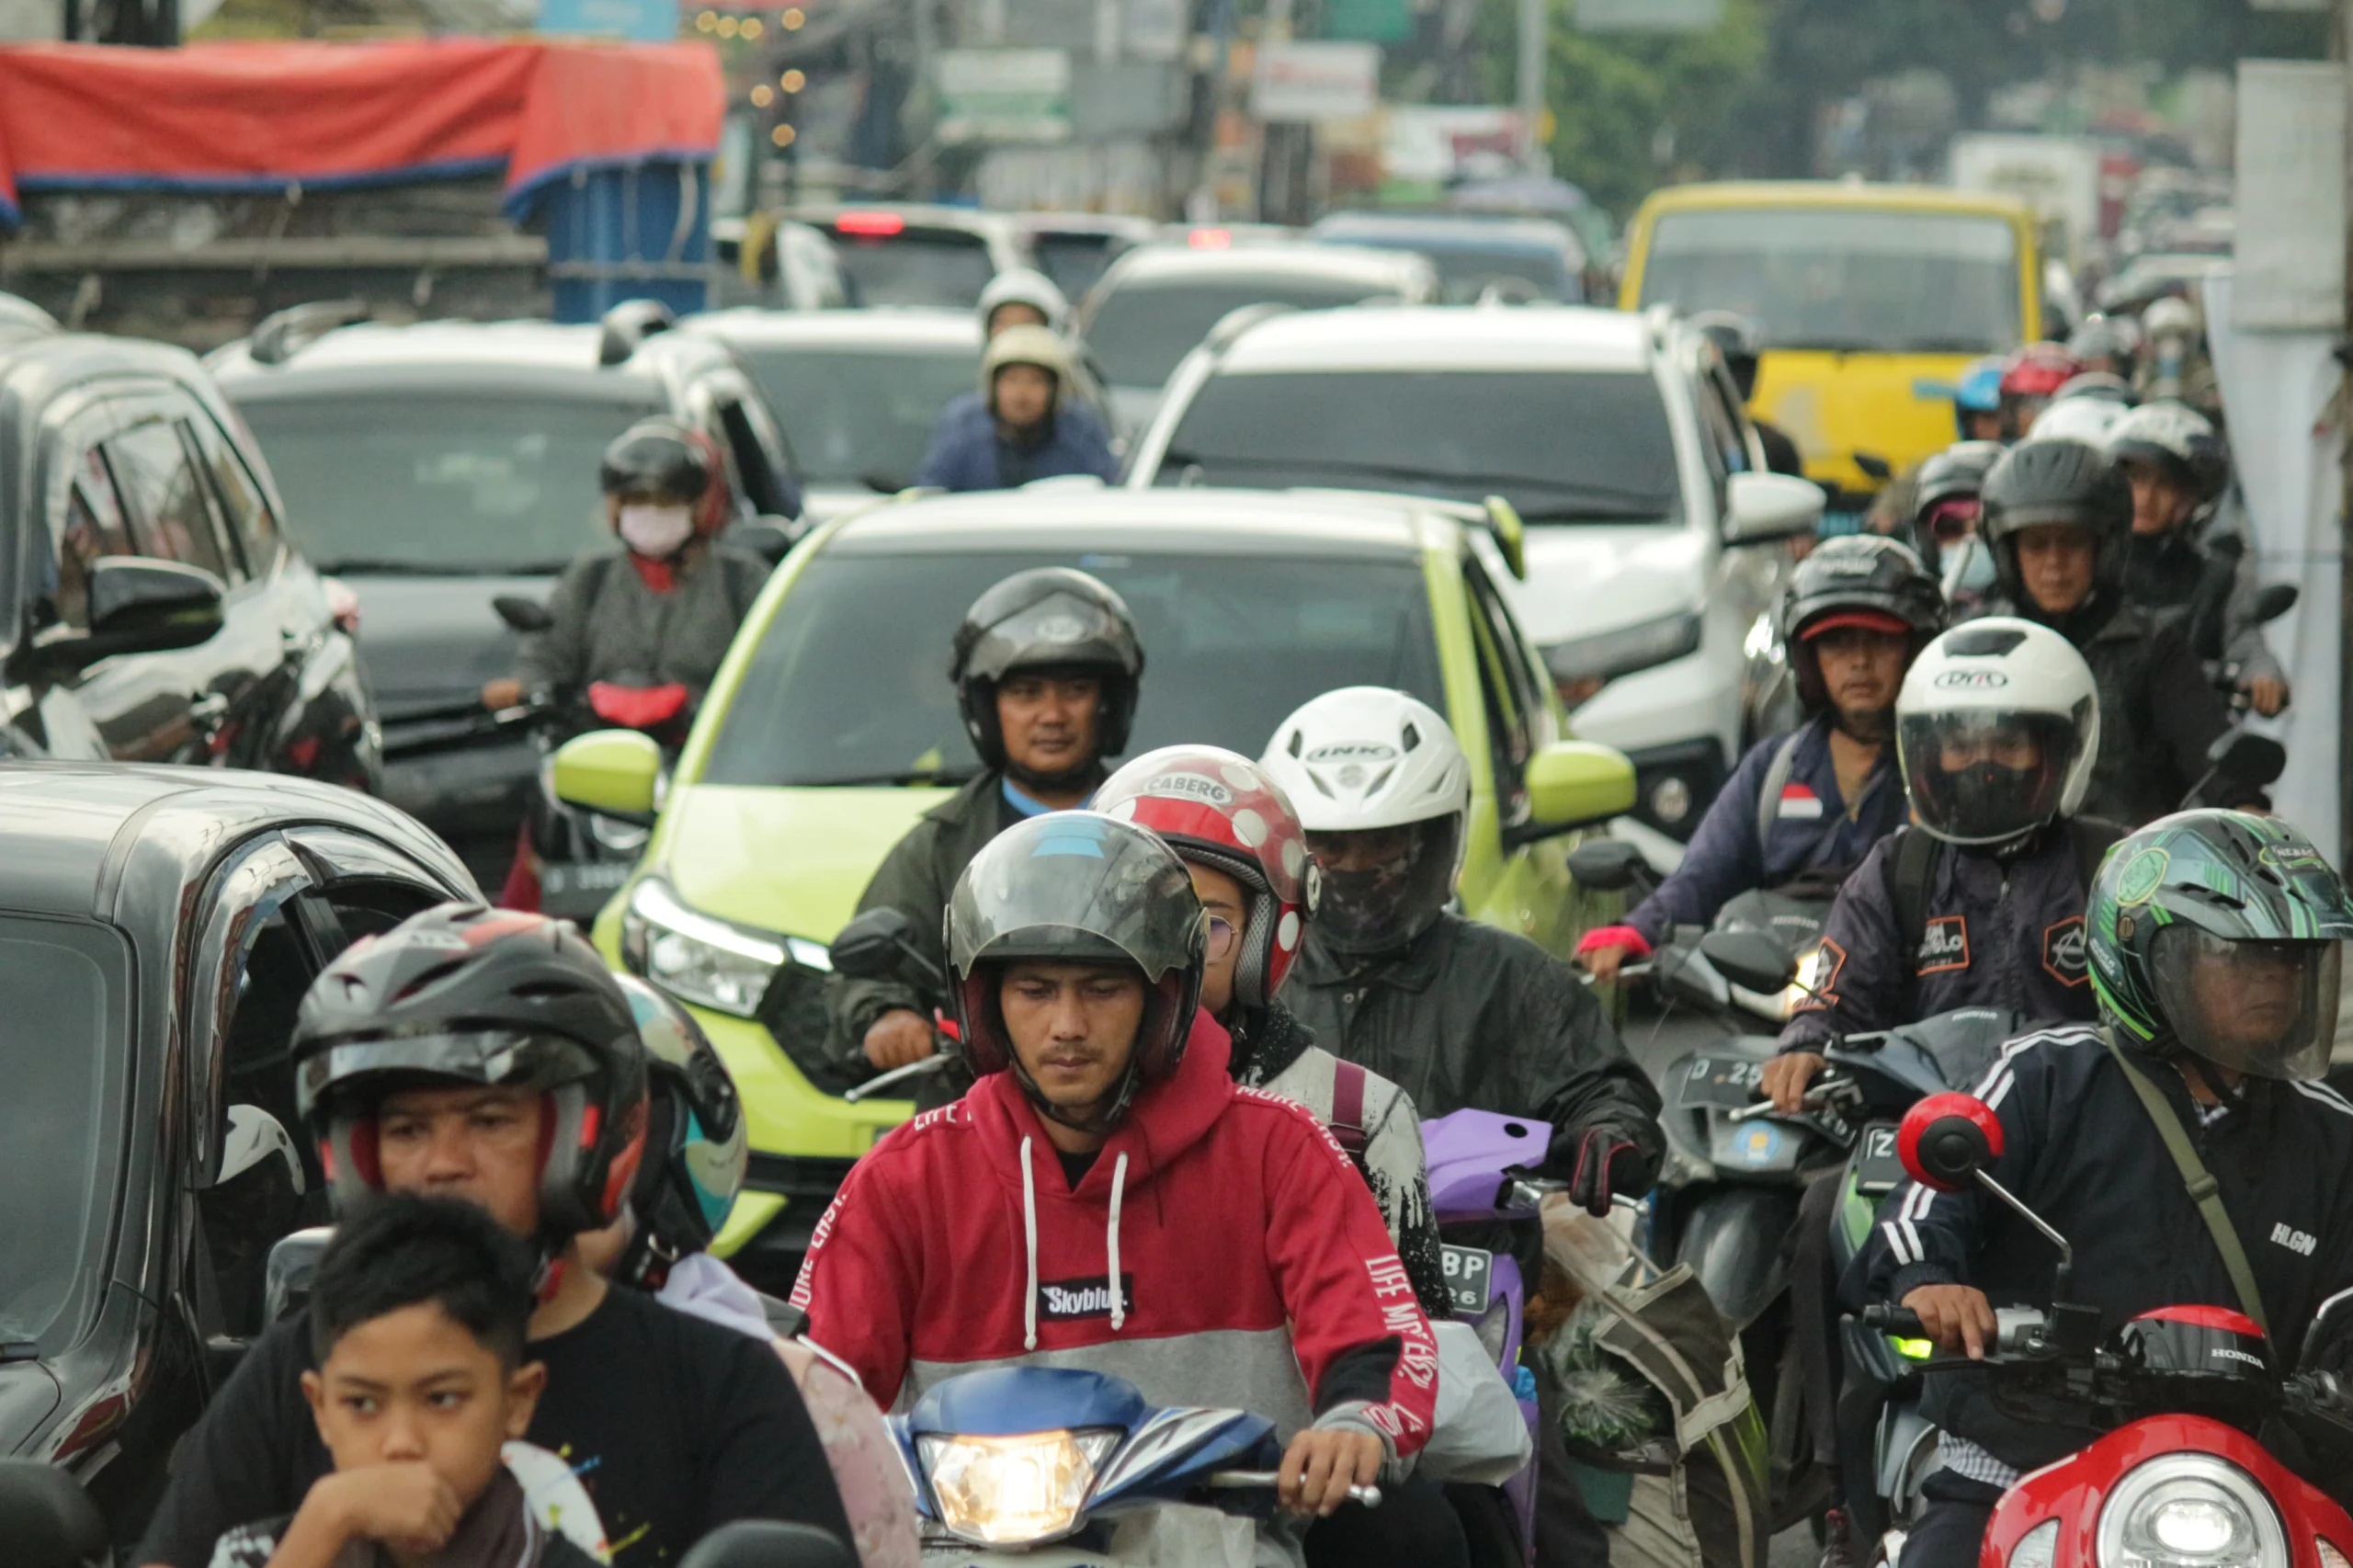 Ilustrasi: Kepadatan arus lalu lintas dampak penumpukan kendaraan di ruas Jalan Raya Cibiru, Kota Bandung - Cileunyi, Kabupaten Bandung. (Pandu Muslim/Jabar Ekspres)